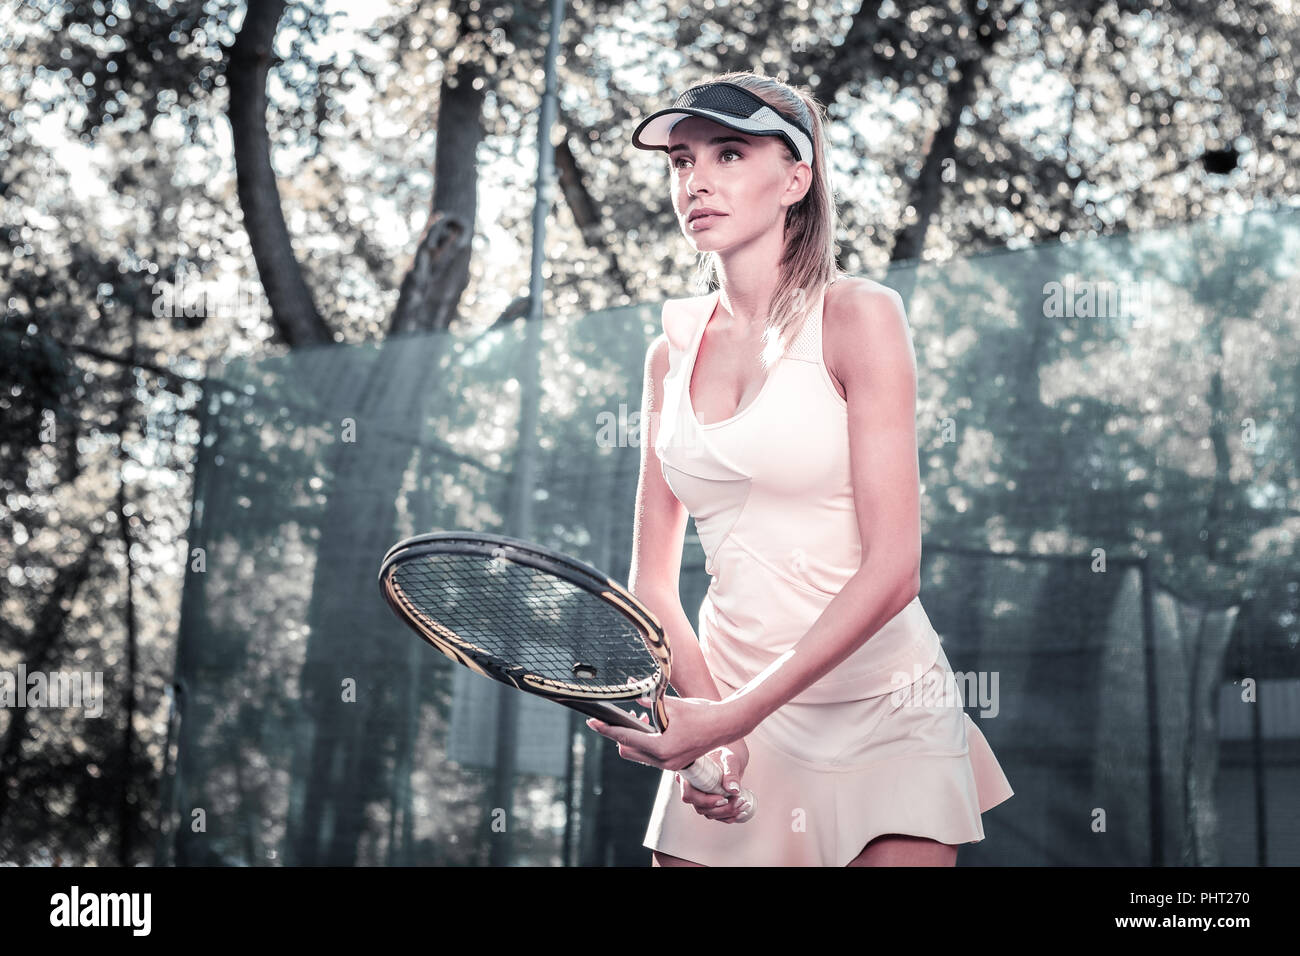 Weibliche Spieler warten auf Tennis ball konzentriert Stockfoto